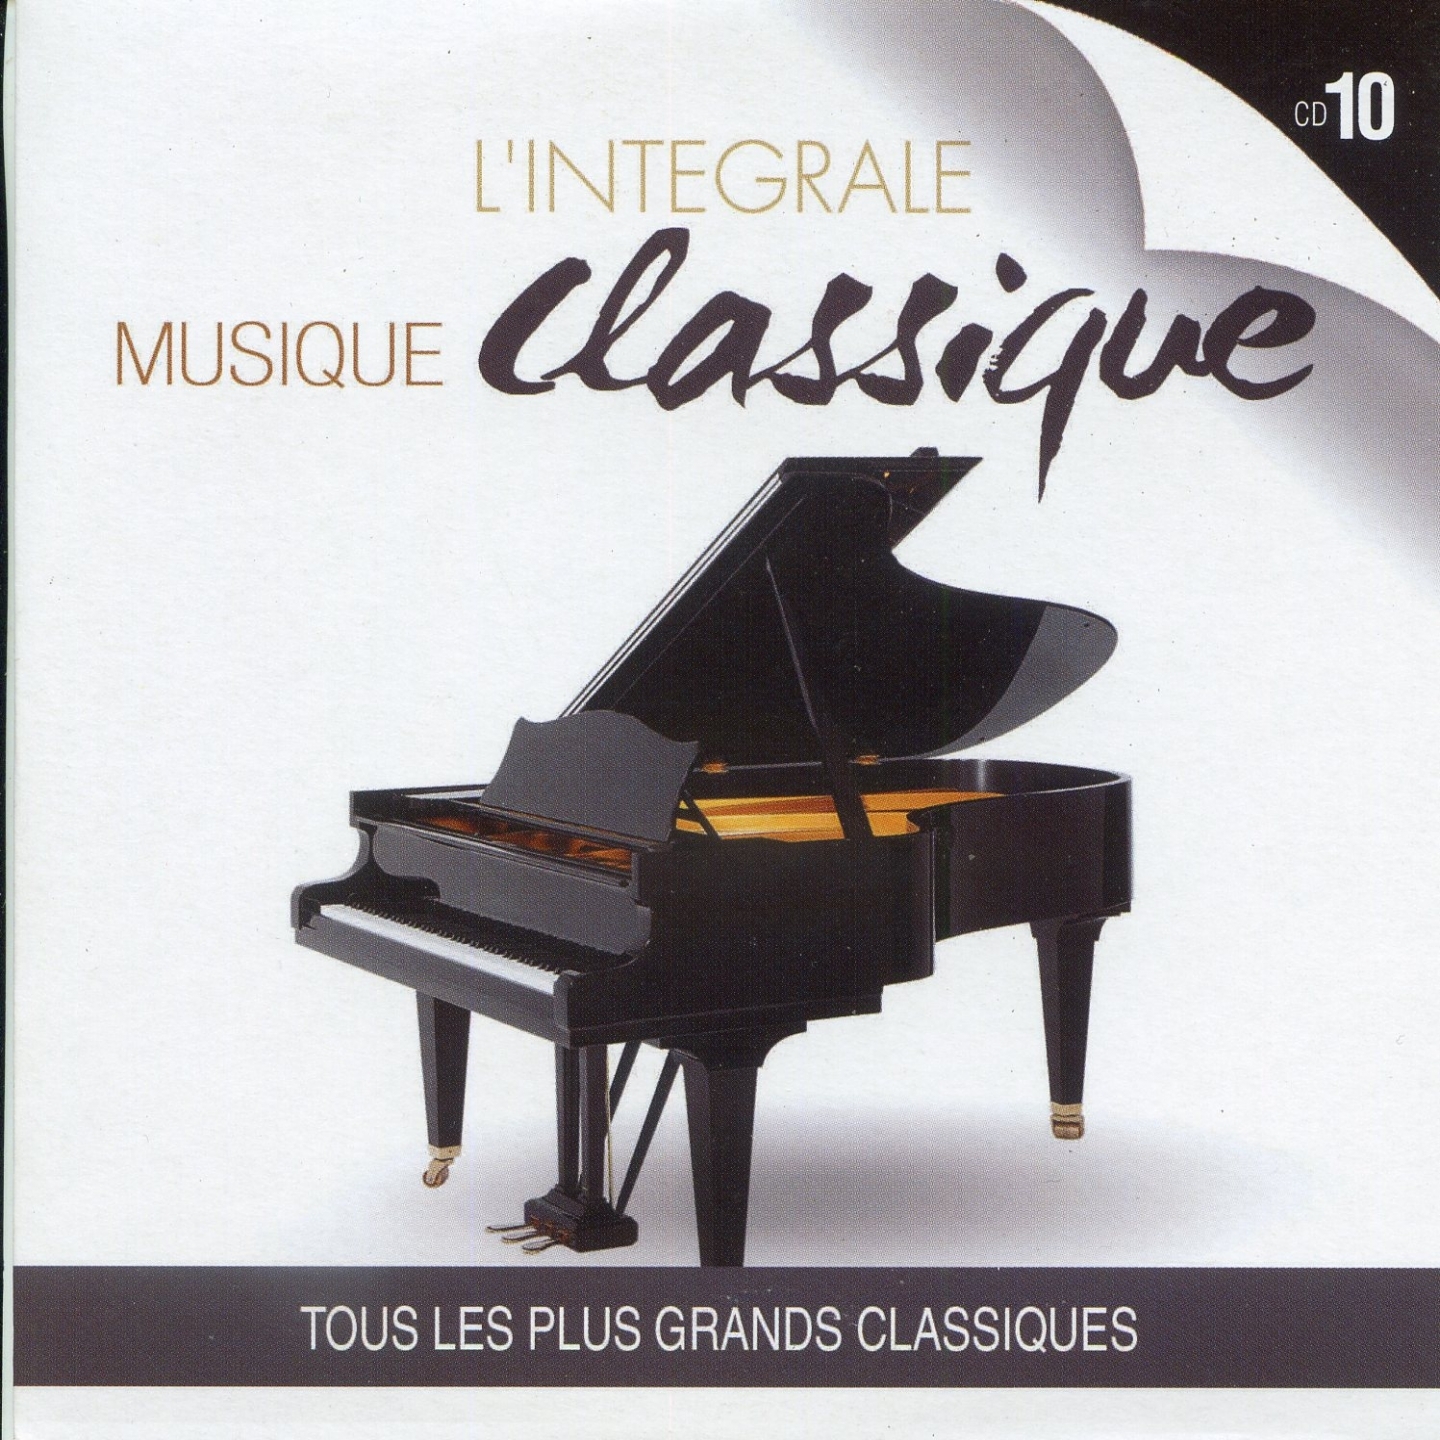 L' inte grale musique classique, Vol. 10